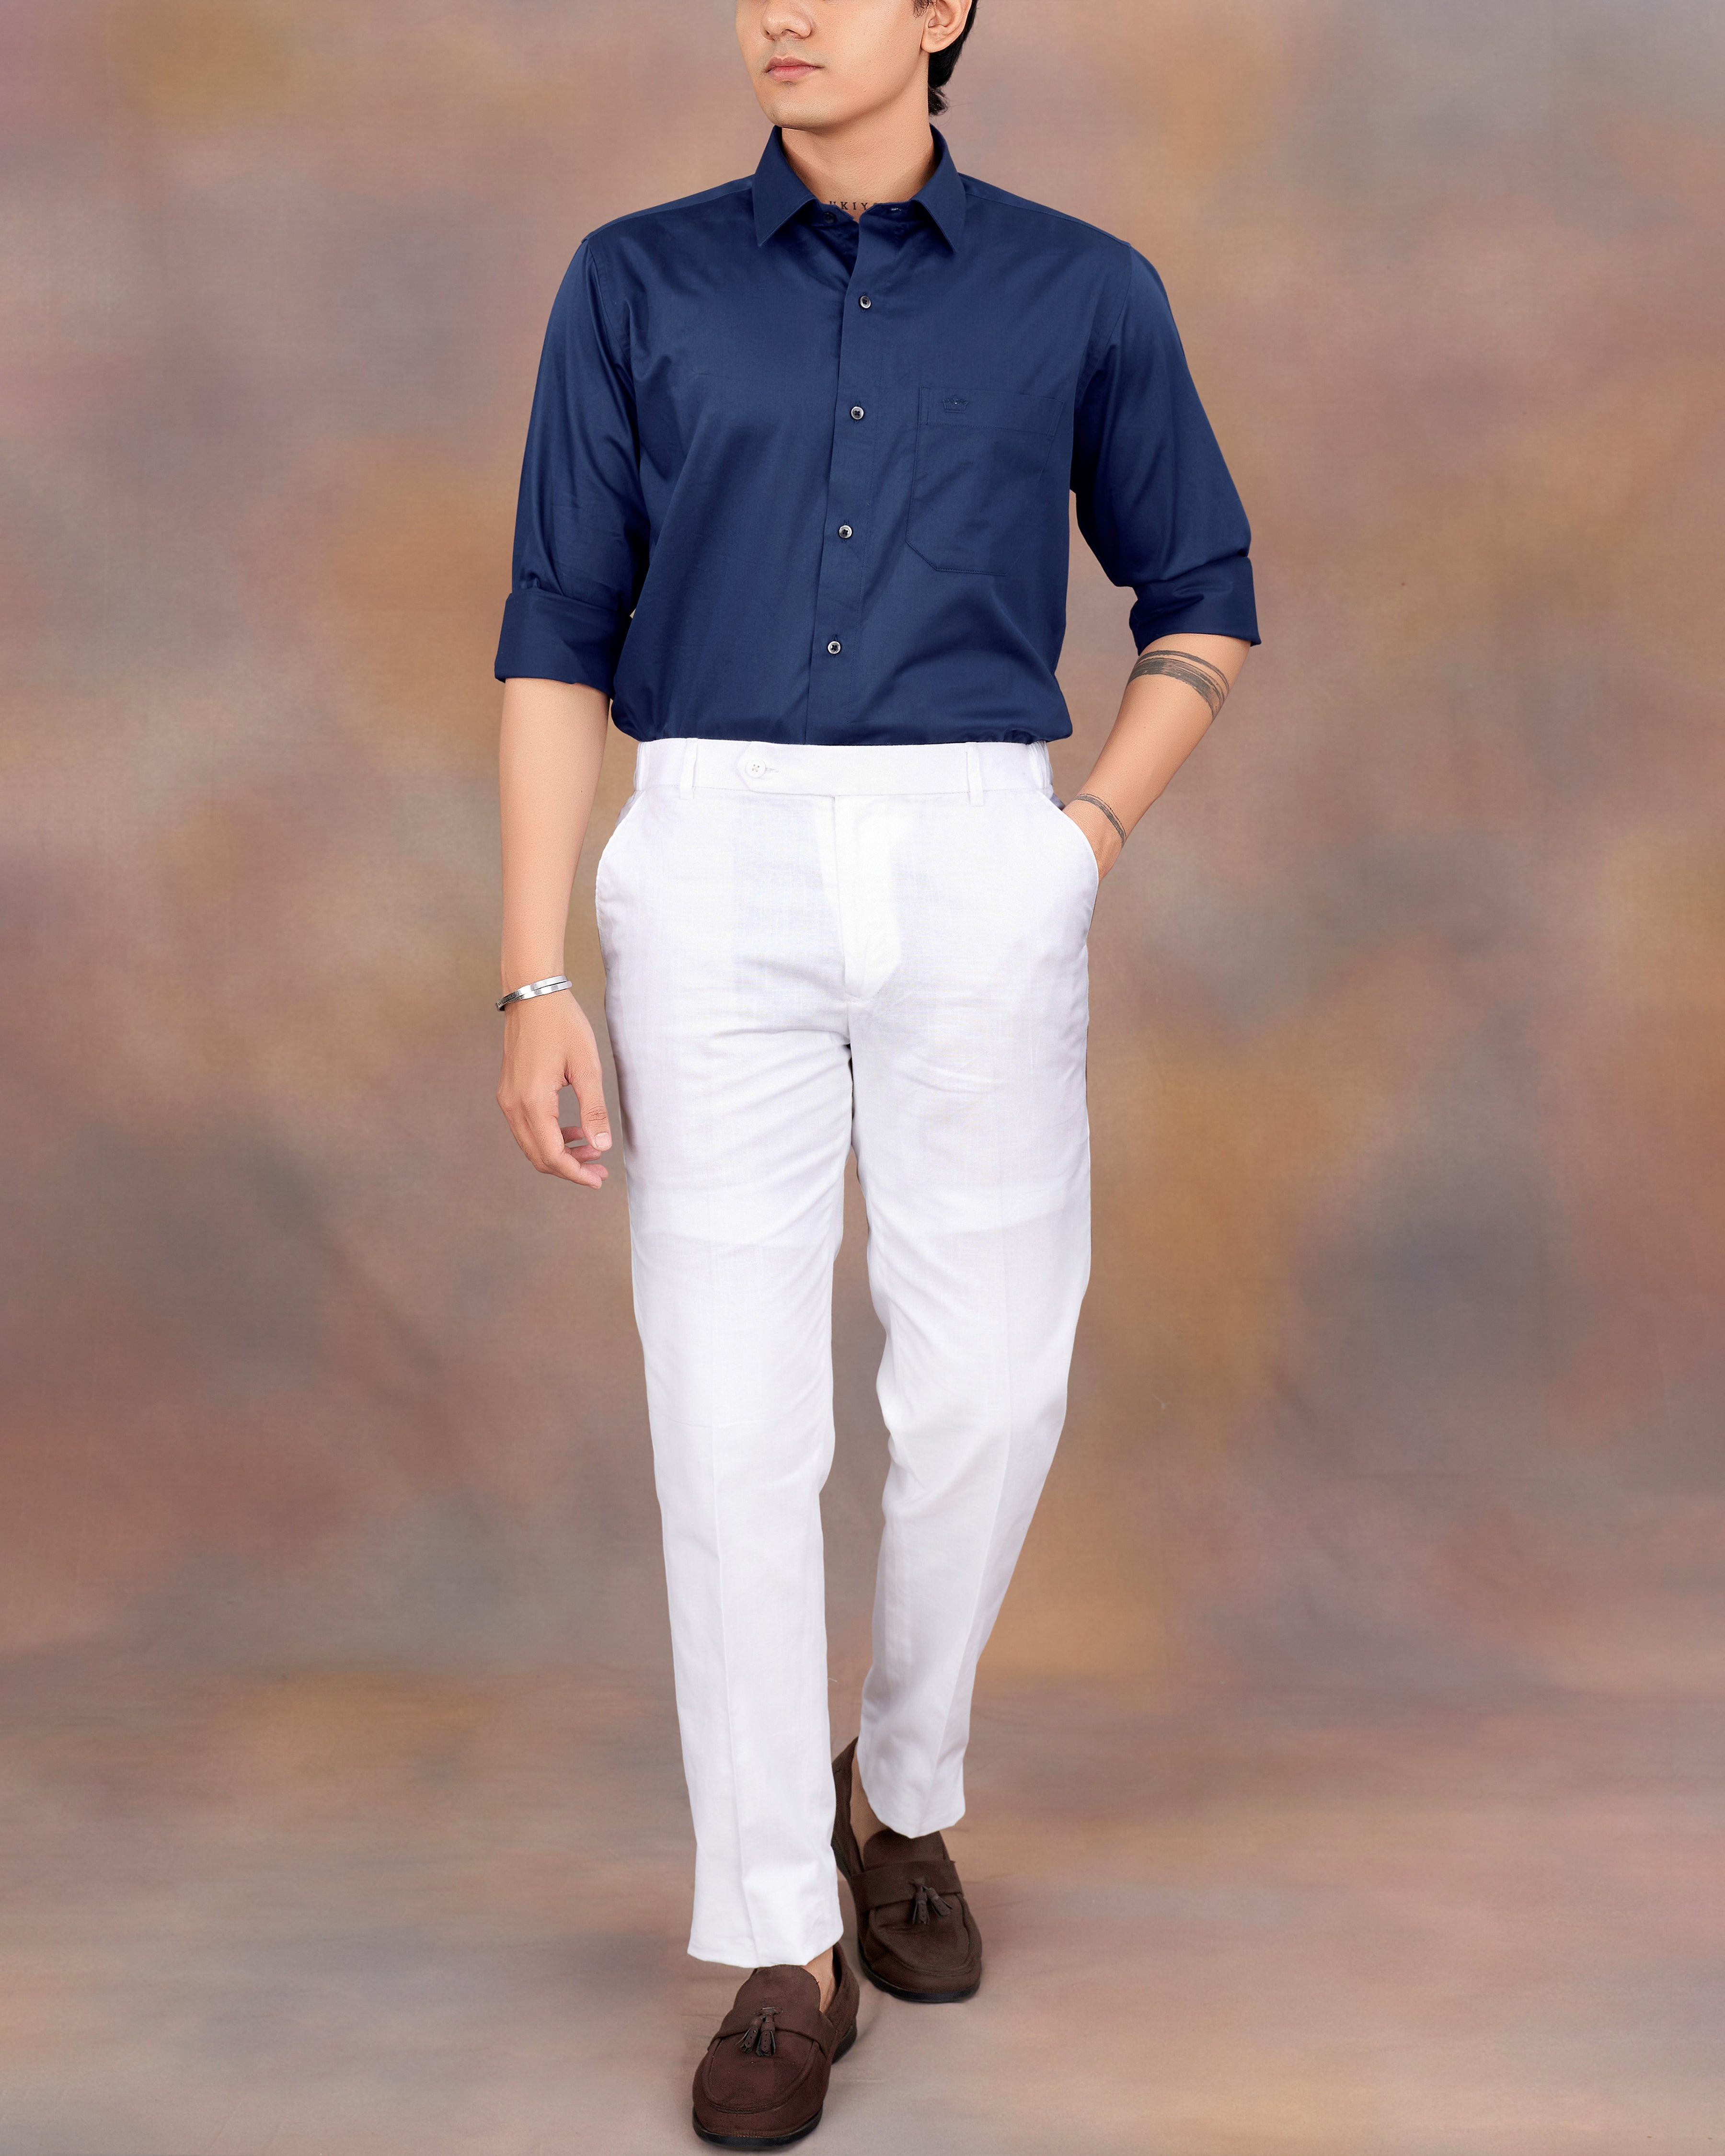 Cloud Burst Blue Formal/Casual Plain-Solid Premium Cotton Shirt